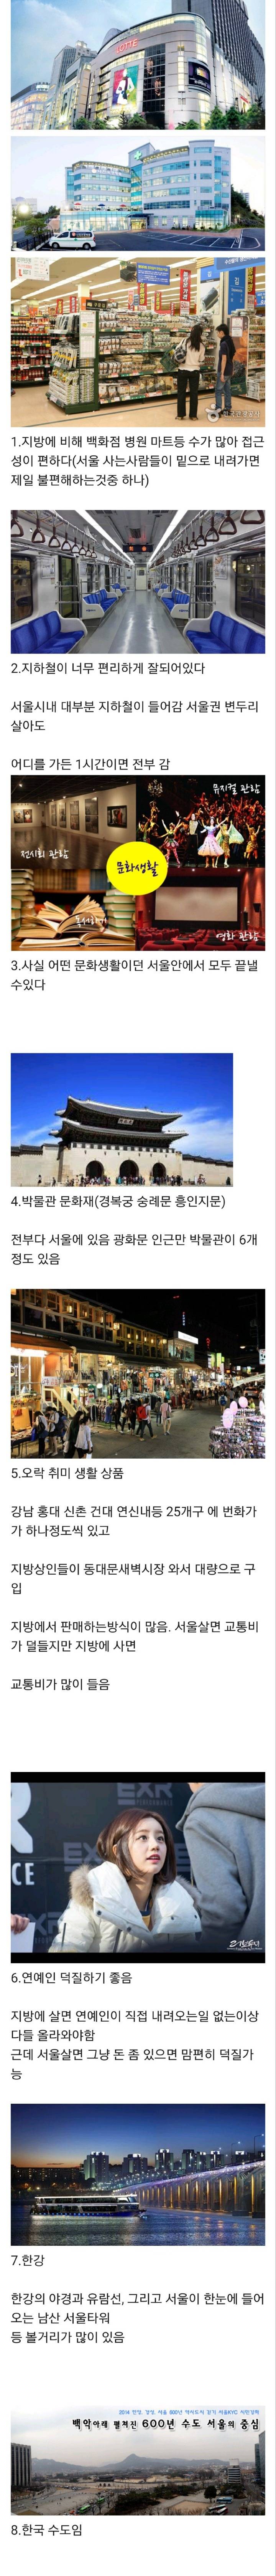 서울에 한번 살면 밑에지역에서 못사는 이유.jpg | 인스티즈